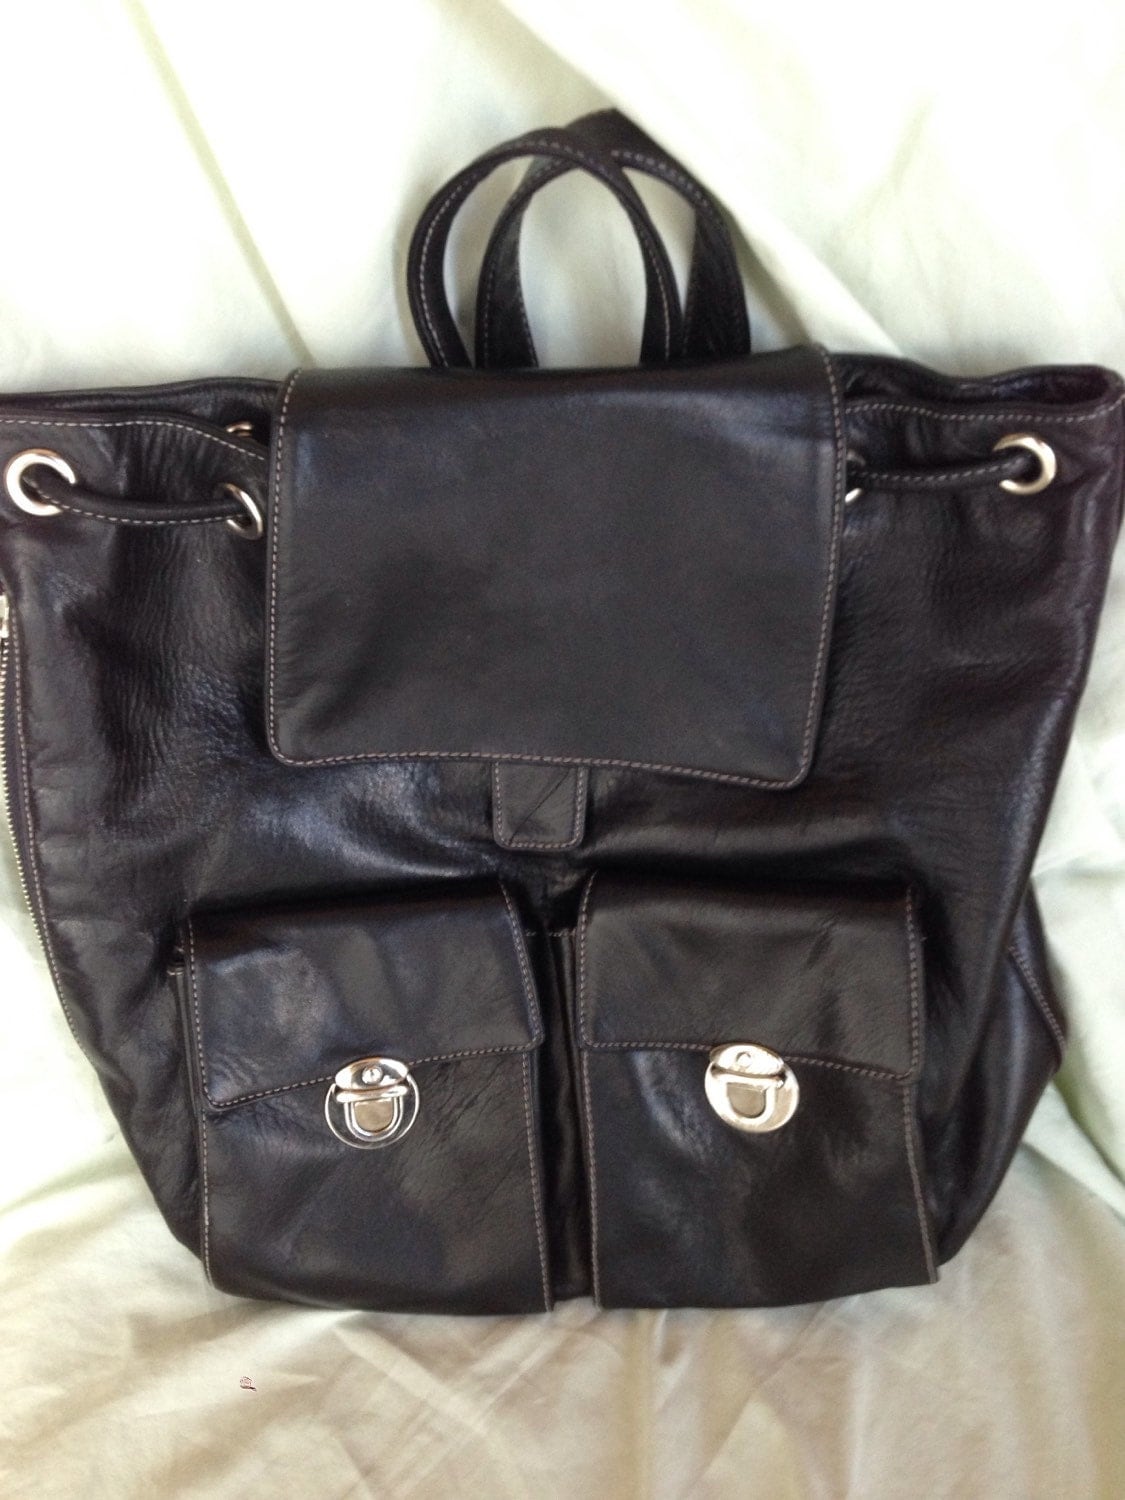 Gorgeous perlina black leather backpack shoulder bag